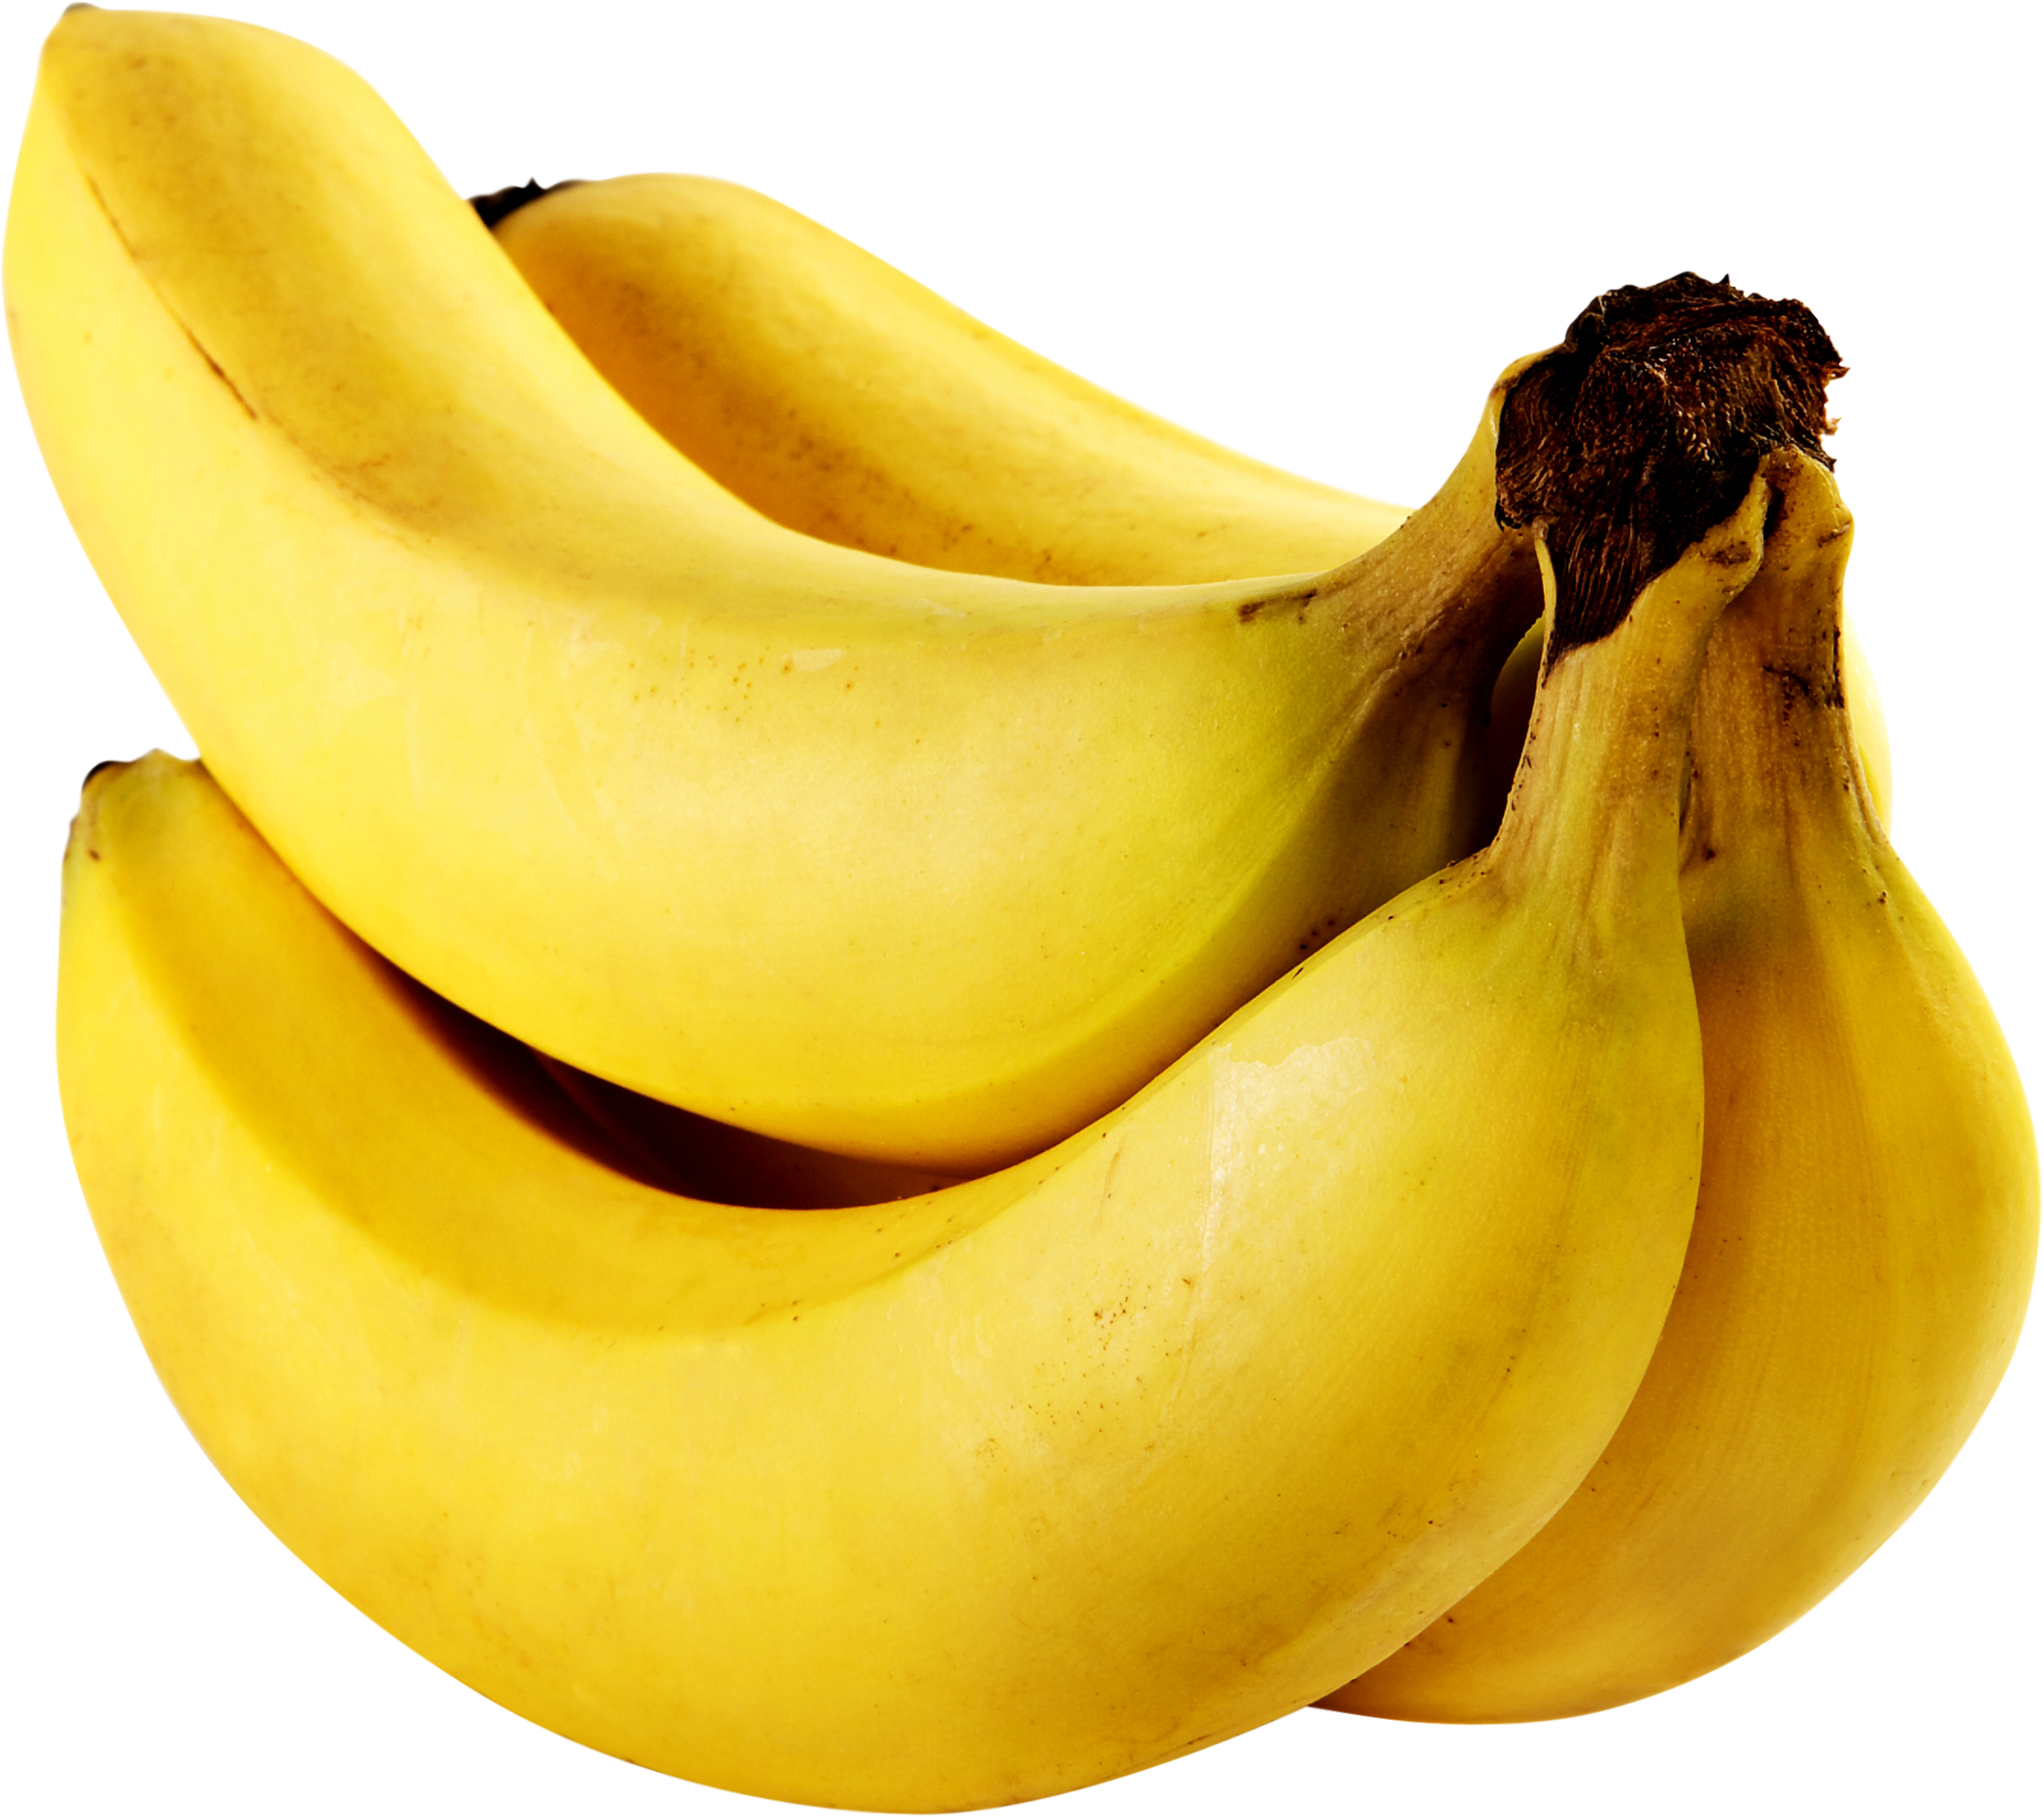 Banana #9